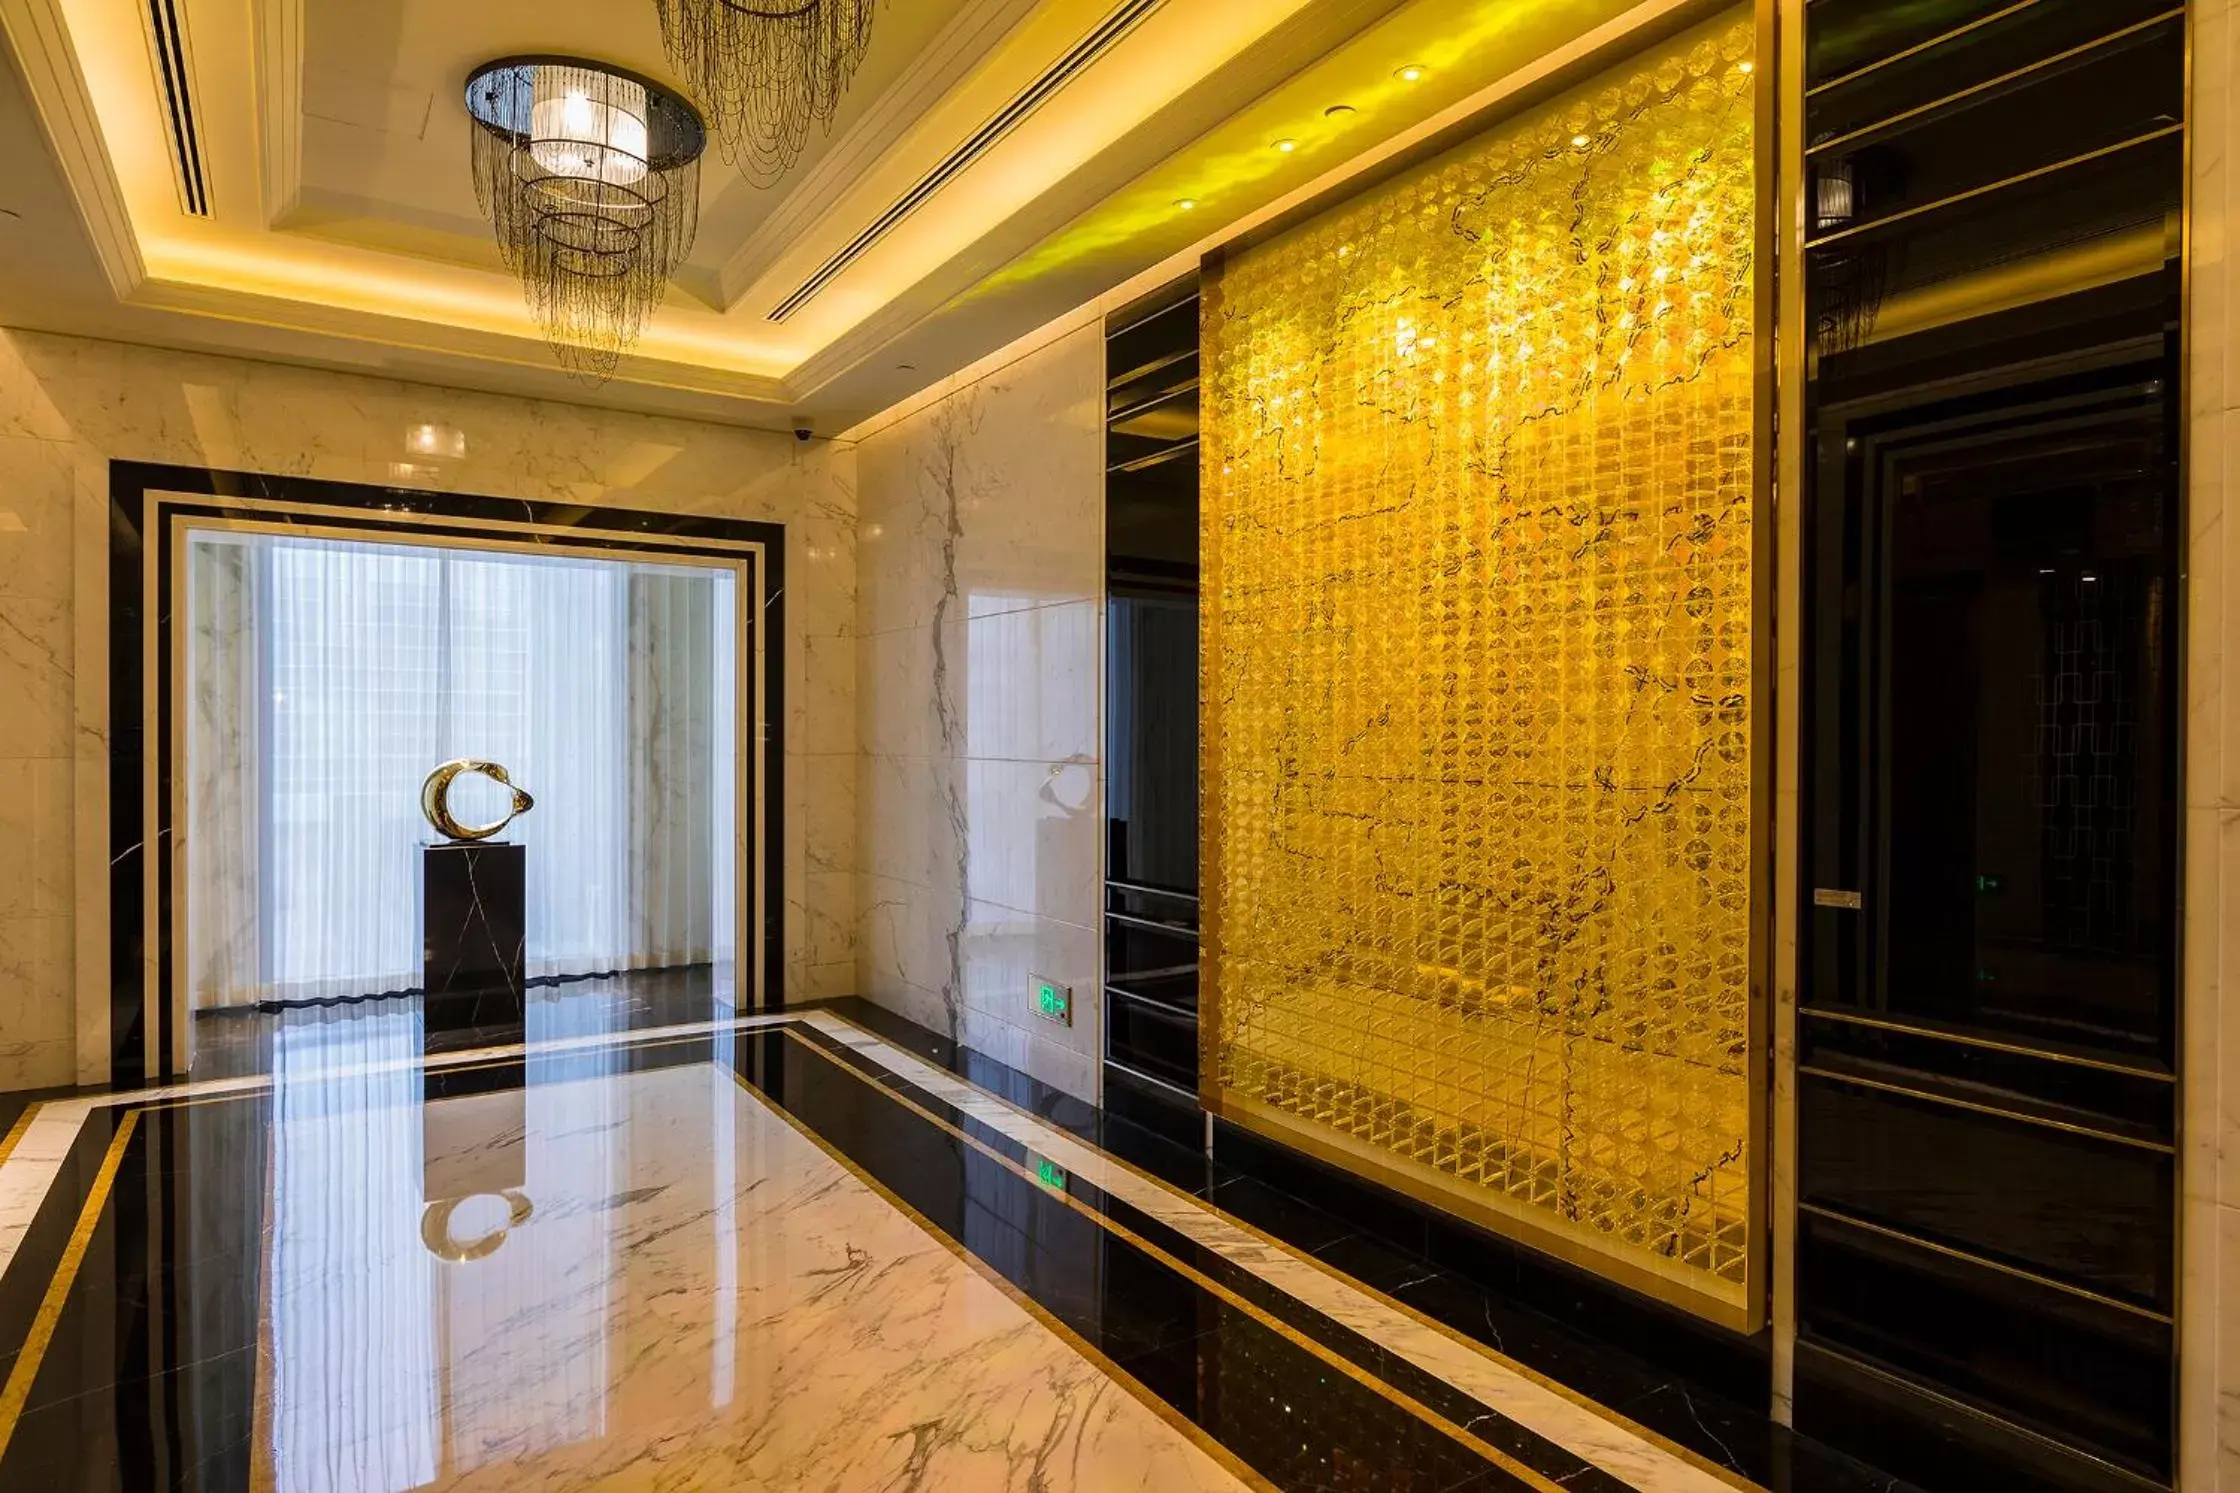 Lobby or reception, Bathroom in Bellagio by MGM Shanghai - on the bund